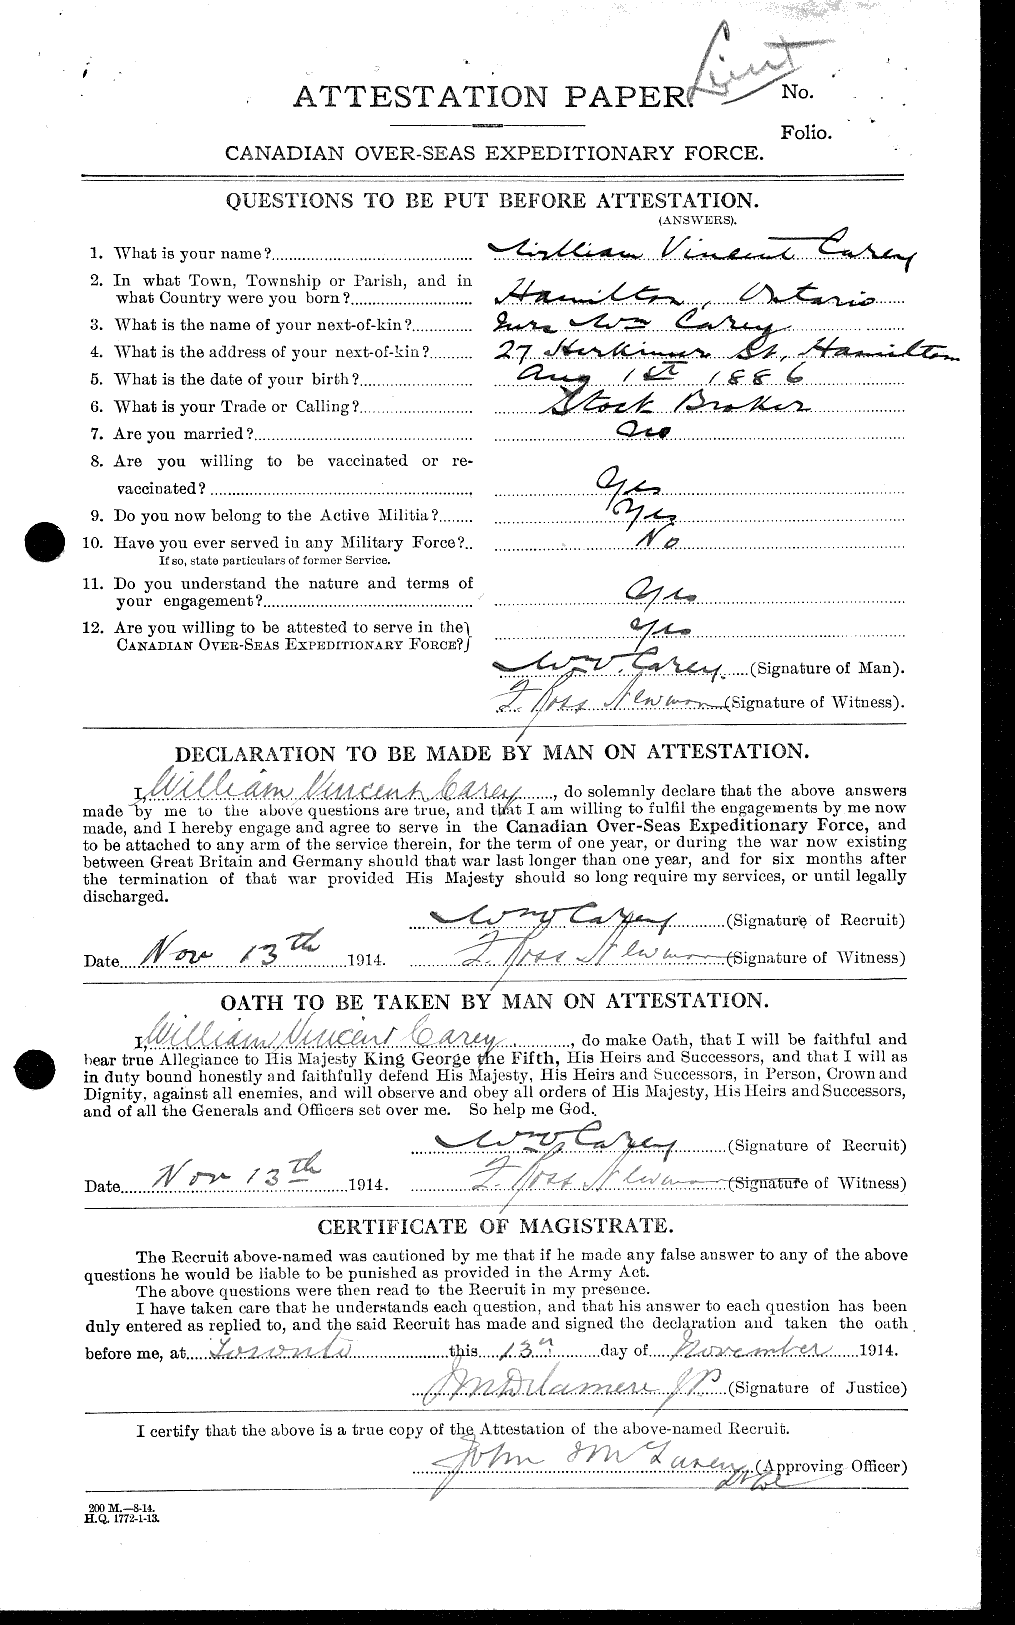 Dossiers du Personnel de la Première Guerre mondiale - CEC 009402a